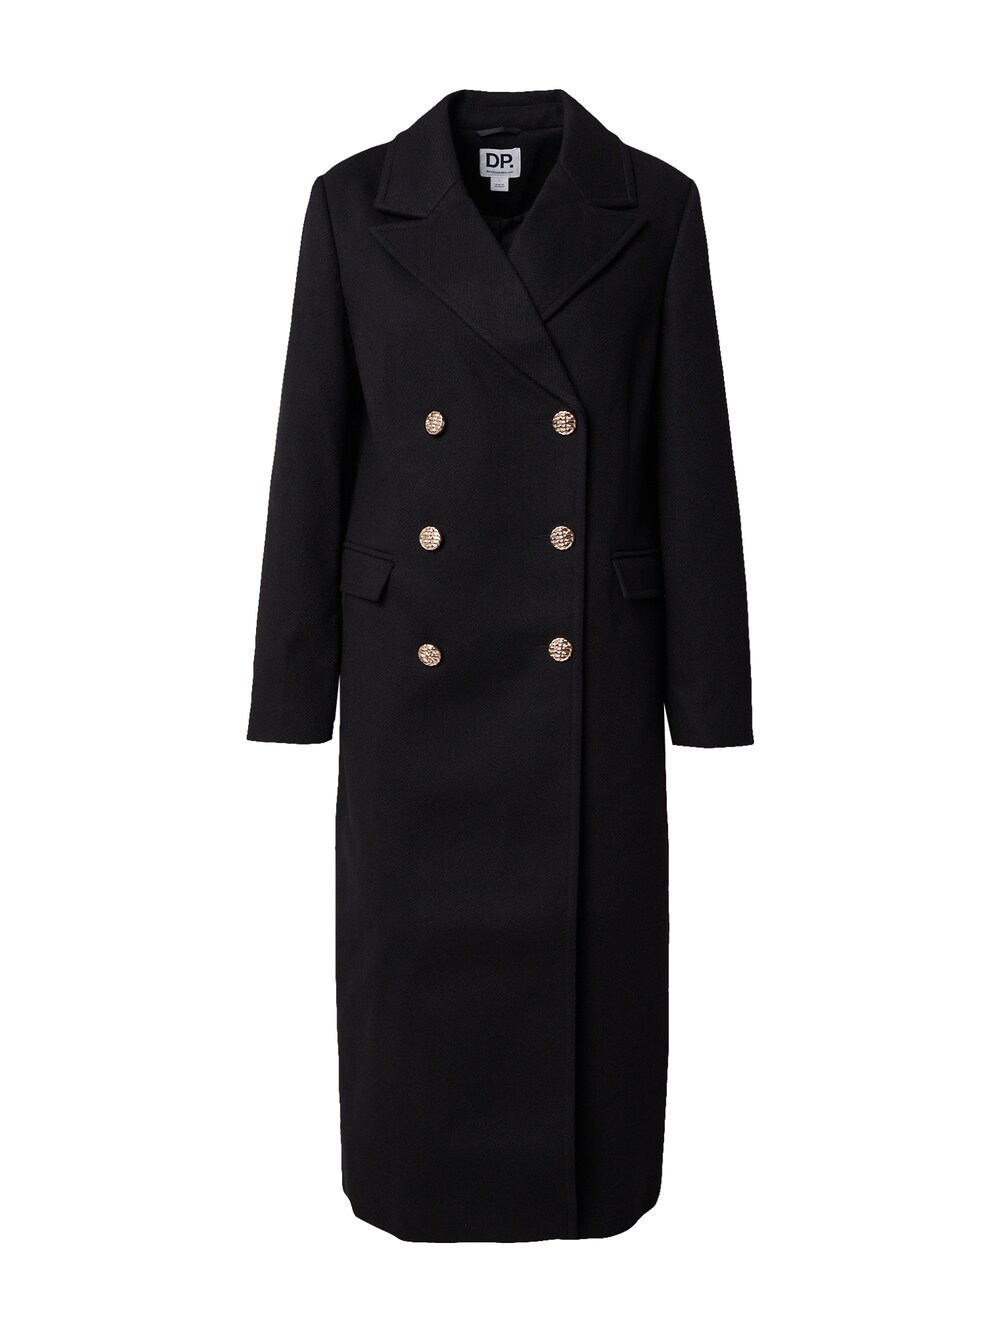 Межсезонное пальто Dorothy Perkins, черный межсезонное пальто dorothy perkins кэмел